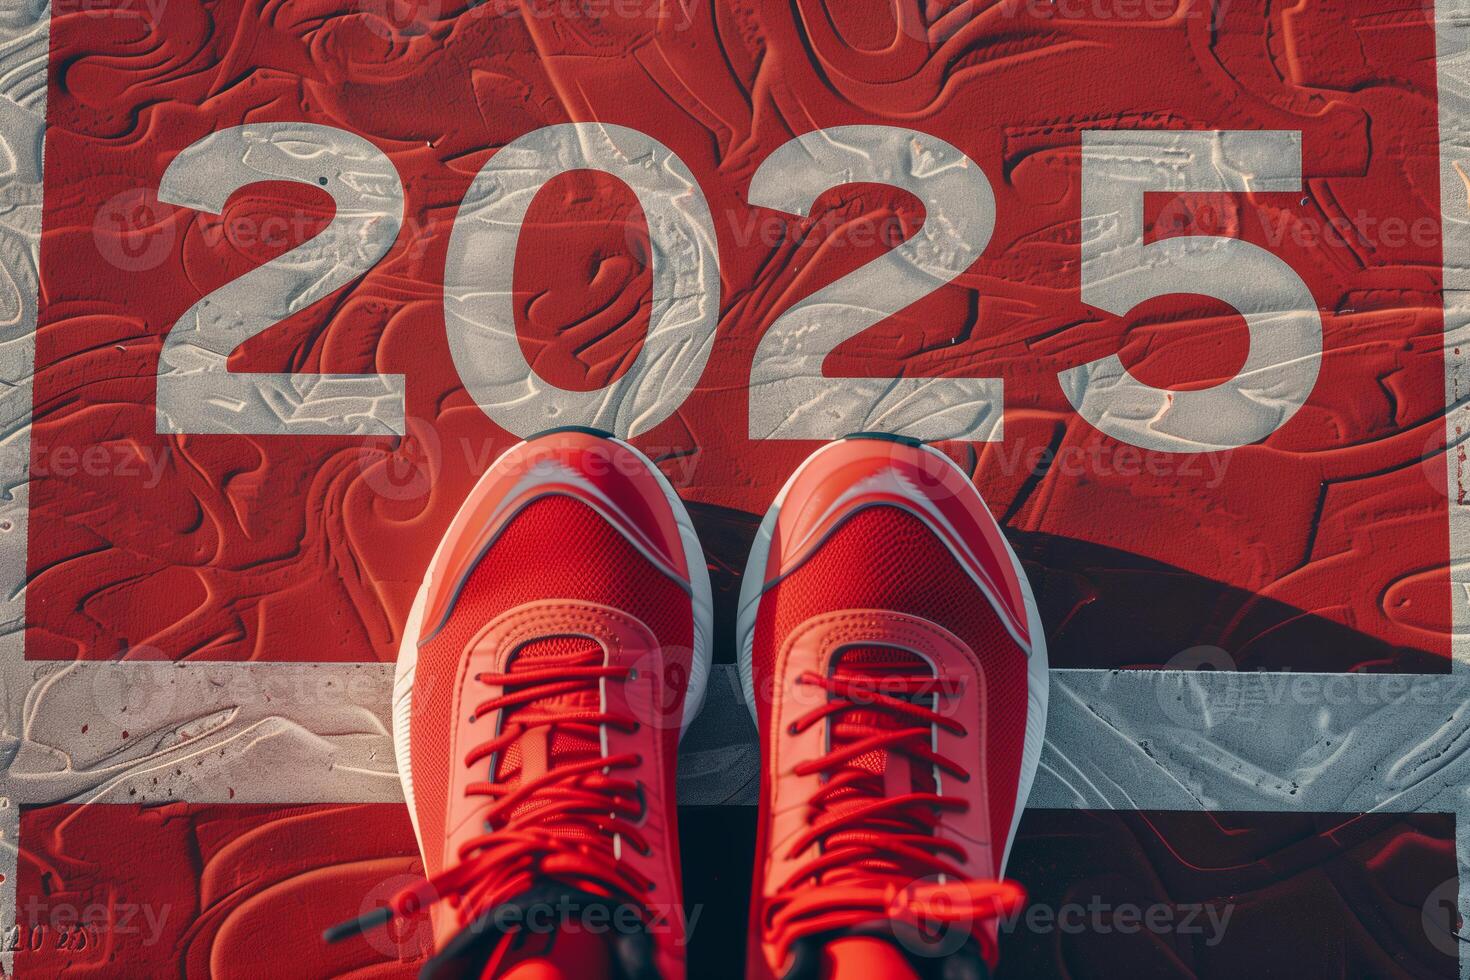 de början av 2025 är skriven på en färgrik väg. konceptuell Foto av de kommande ny år 2025. ny år begrepp, motivering, företag befordran, steg fram, rör på sig fram, hoppas